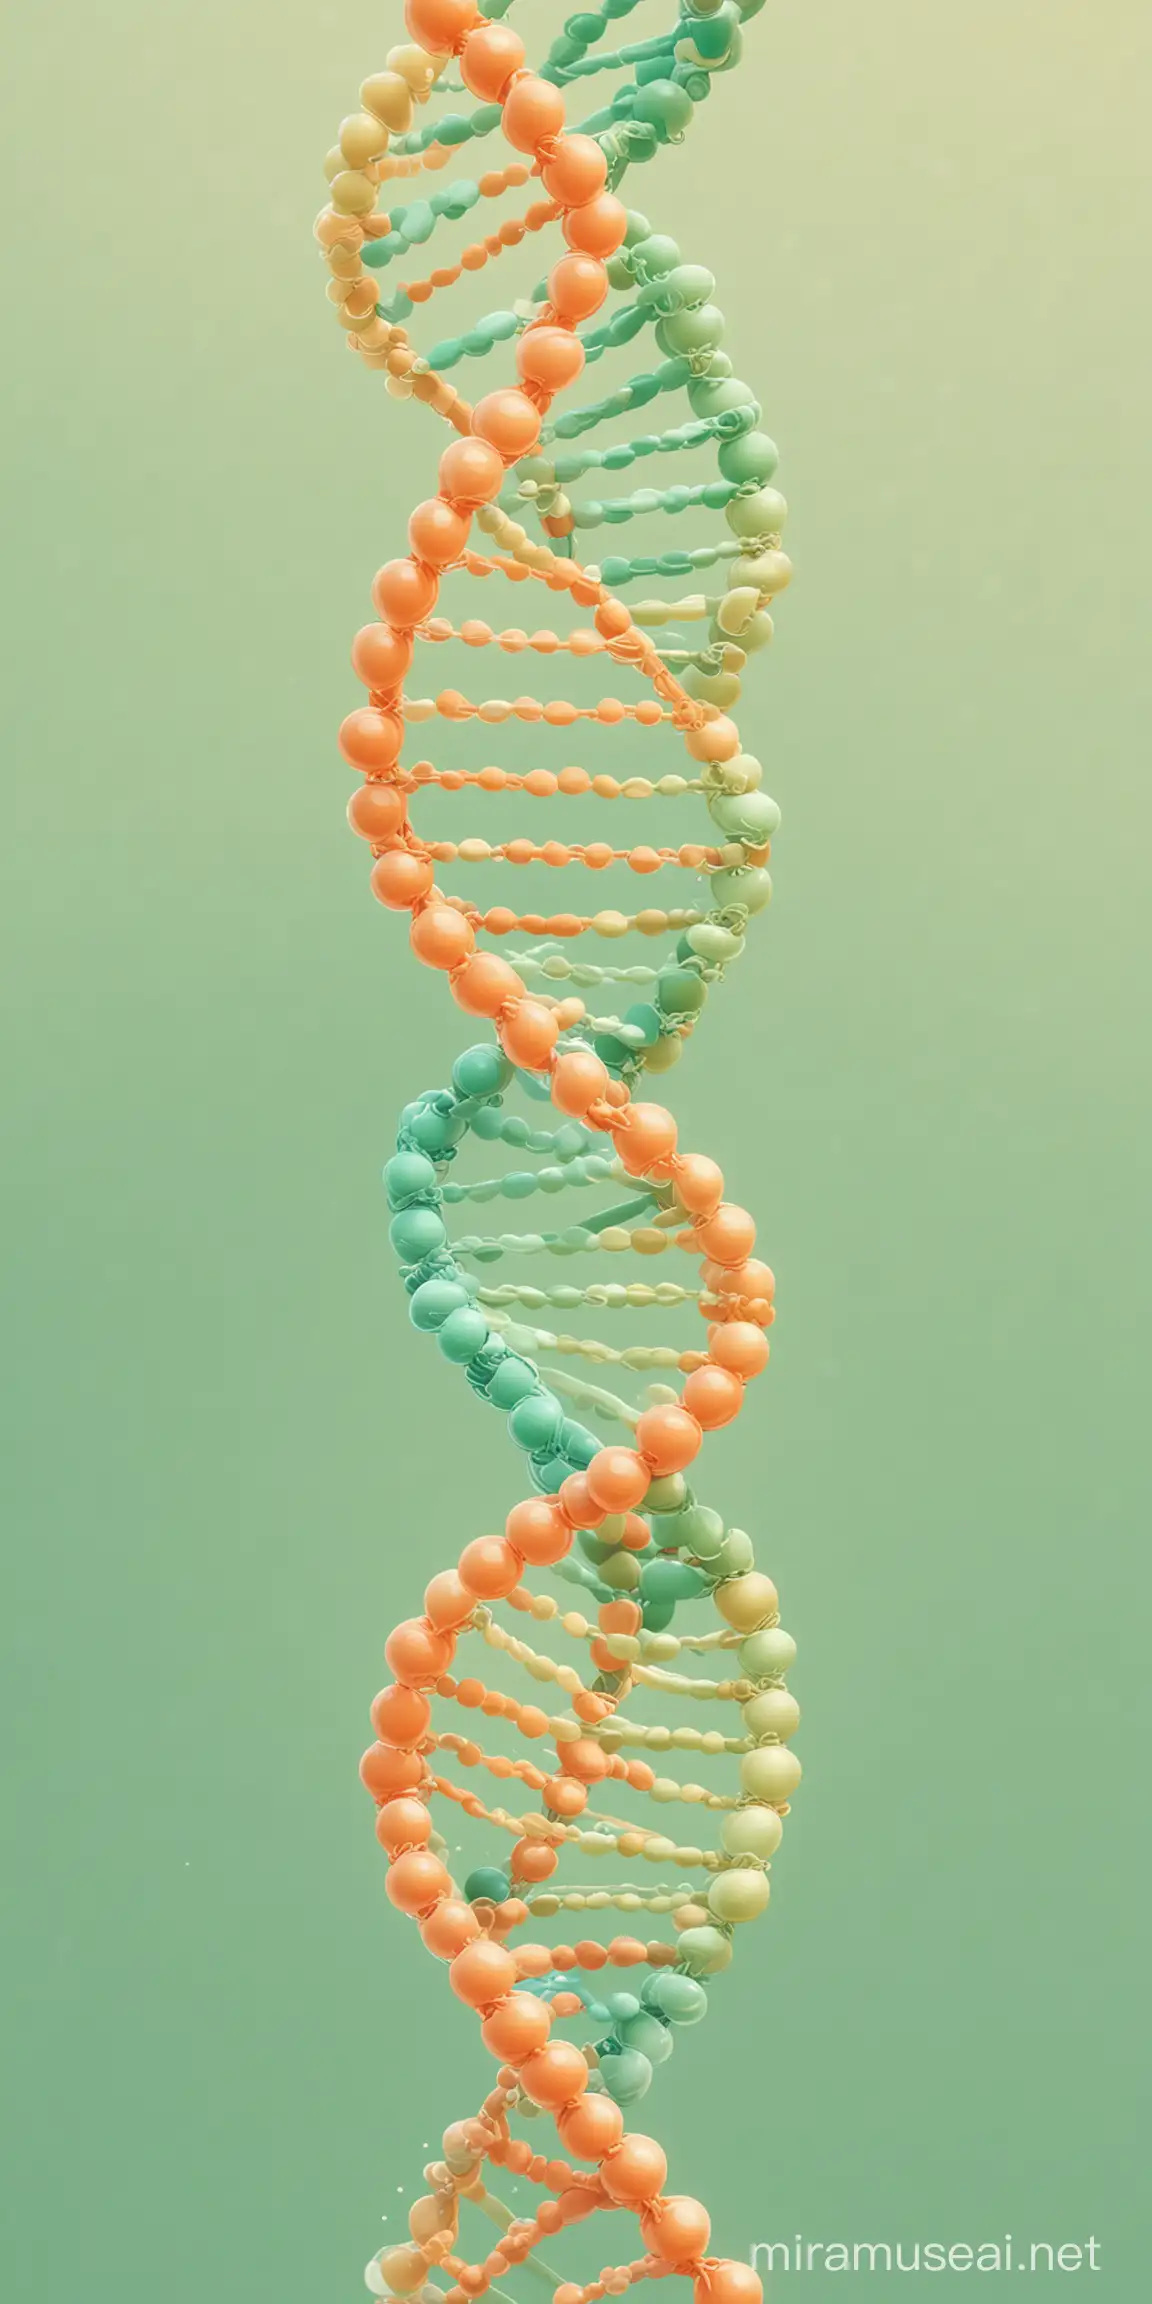 ДНК, мультипликационный стиль, Disney, пастельные цвета, зелёный, оранжевый